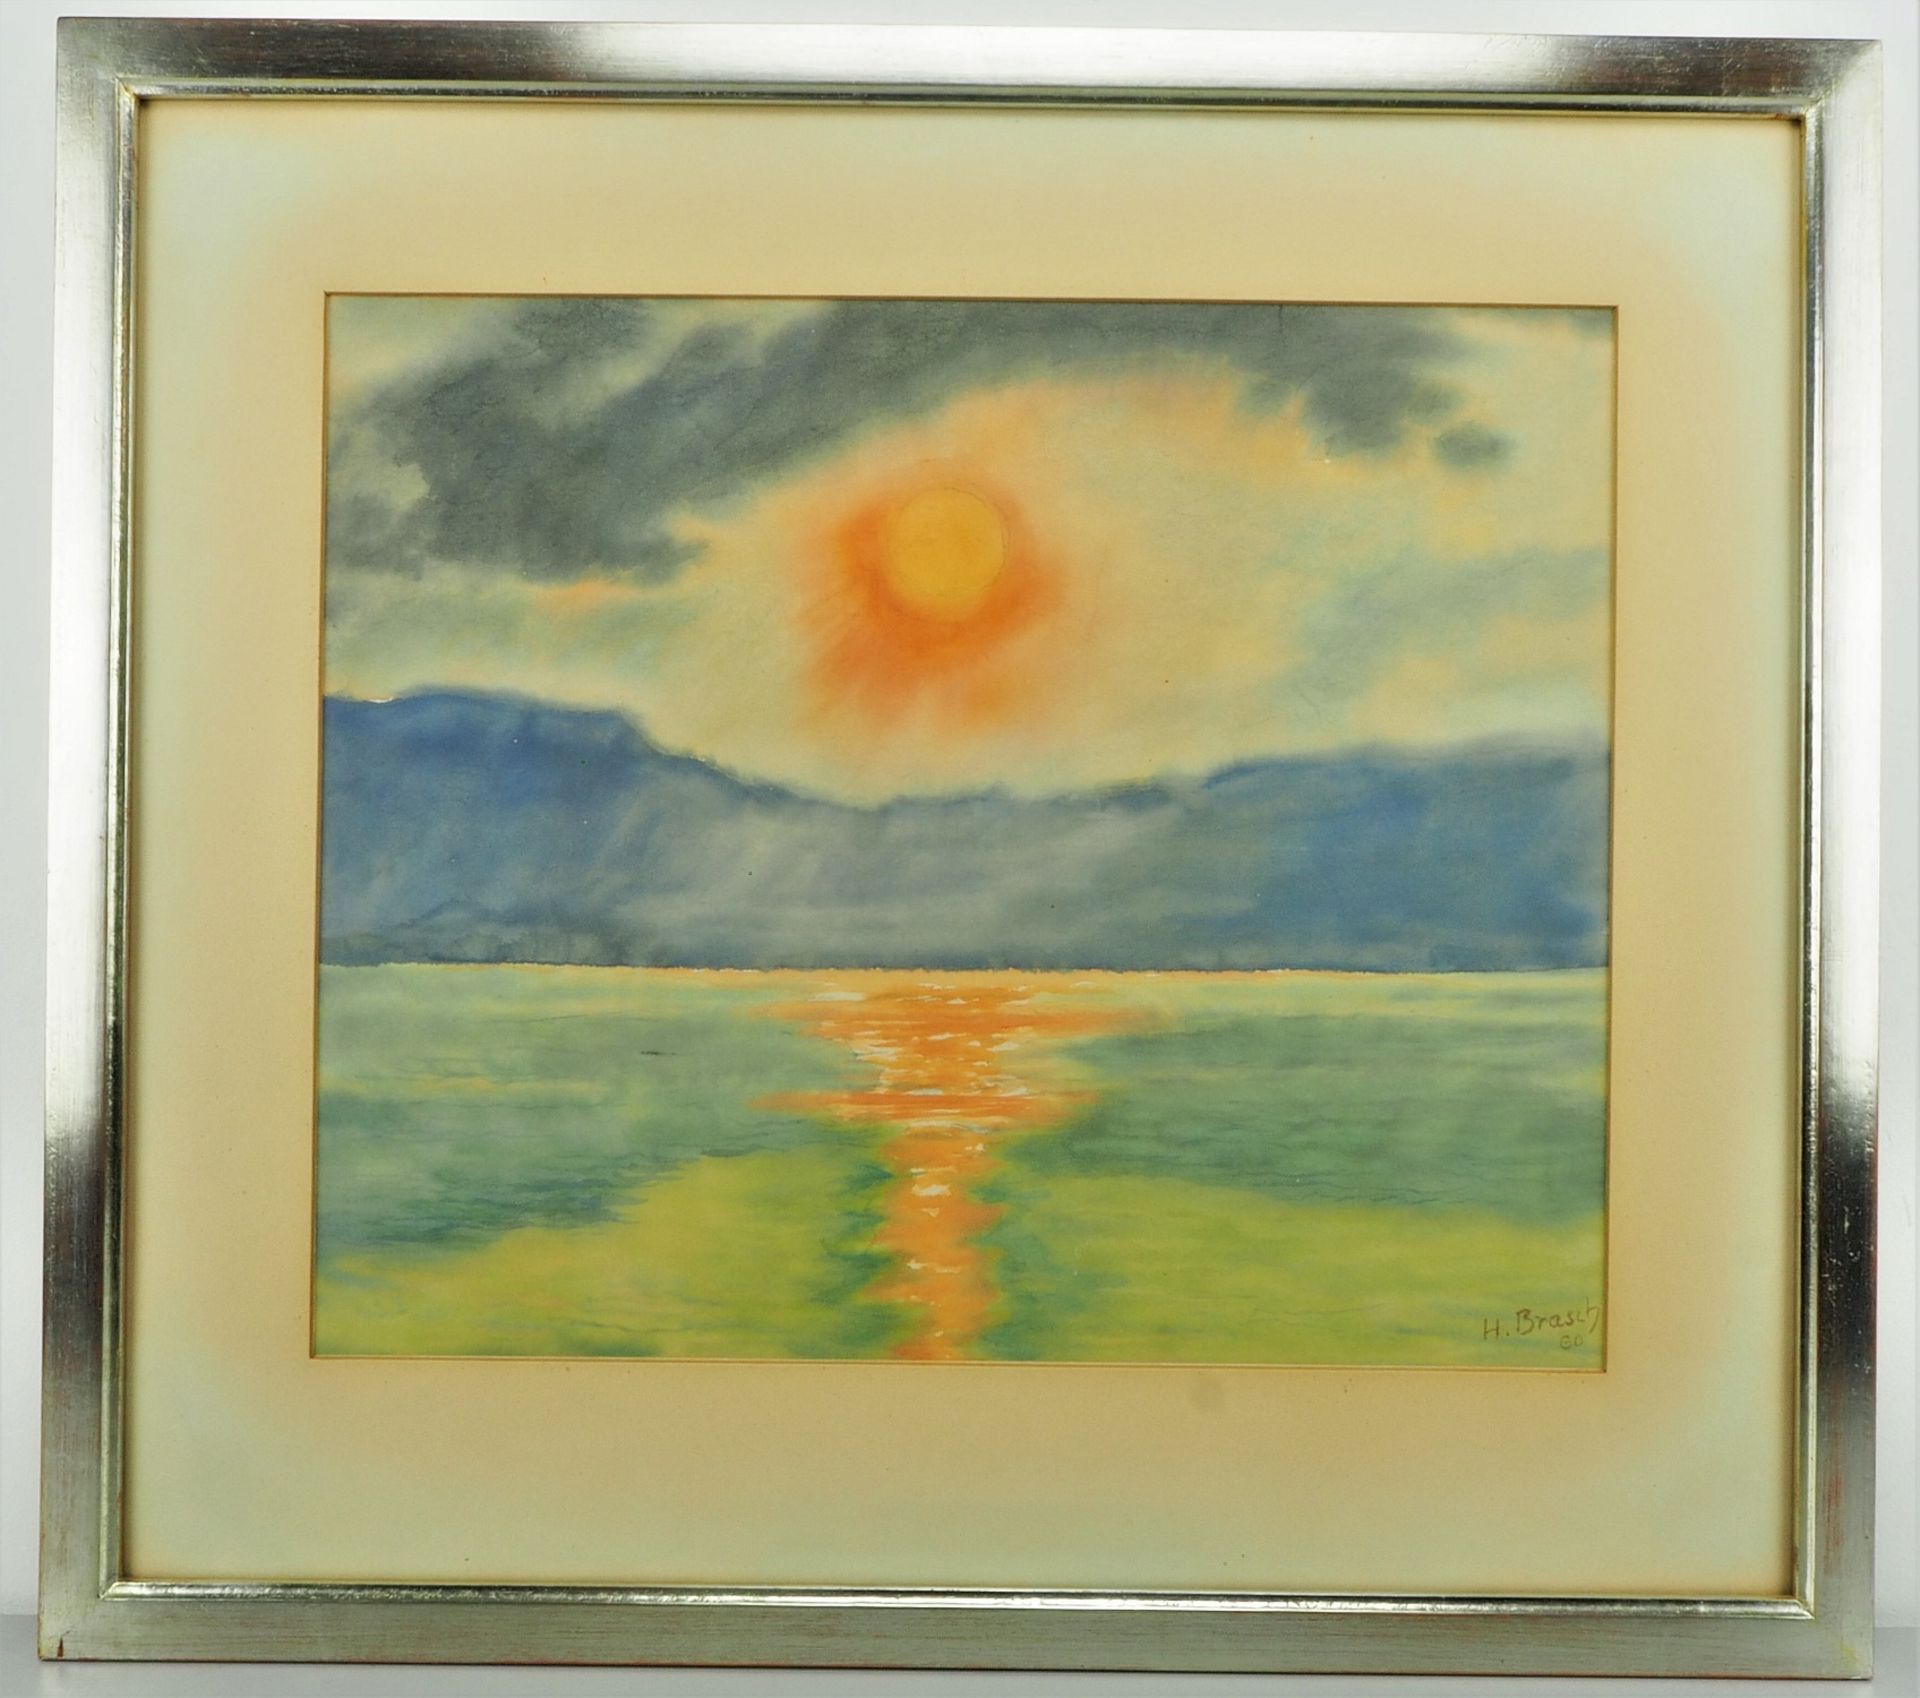 Hans Brasch (1882, Karlsruhe - 1973, Stuttgart) - Sunrise